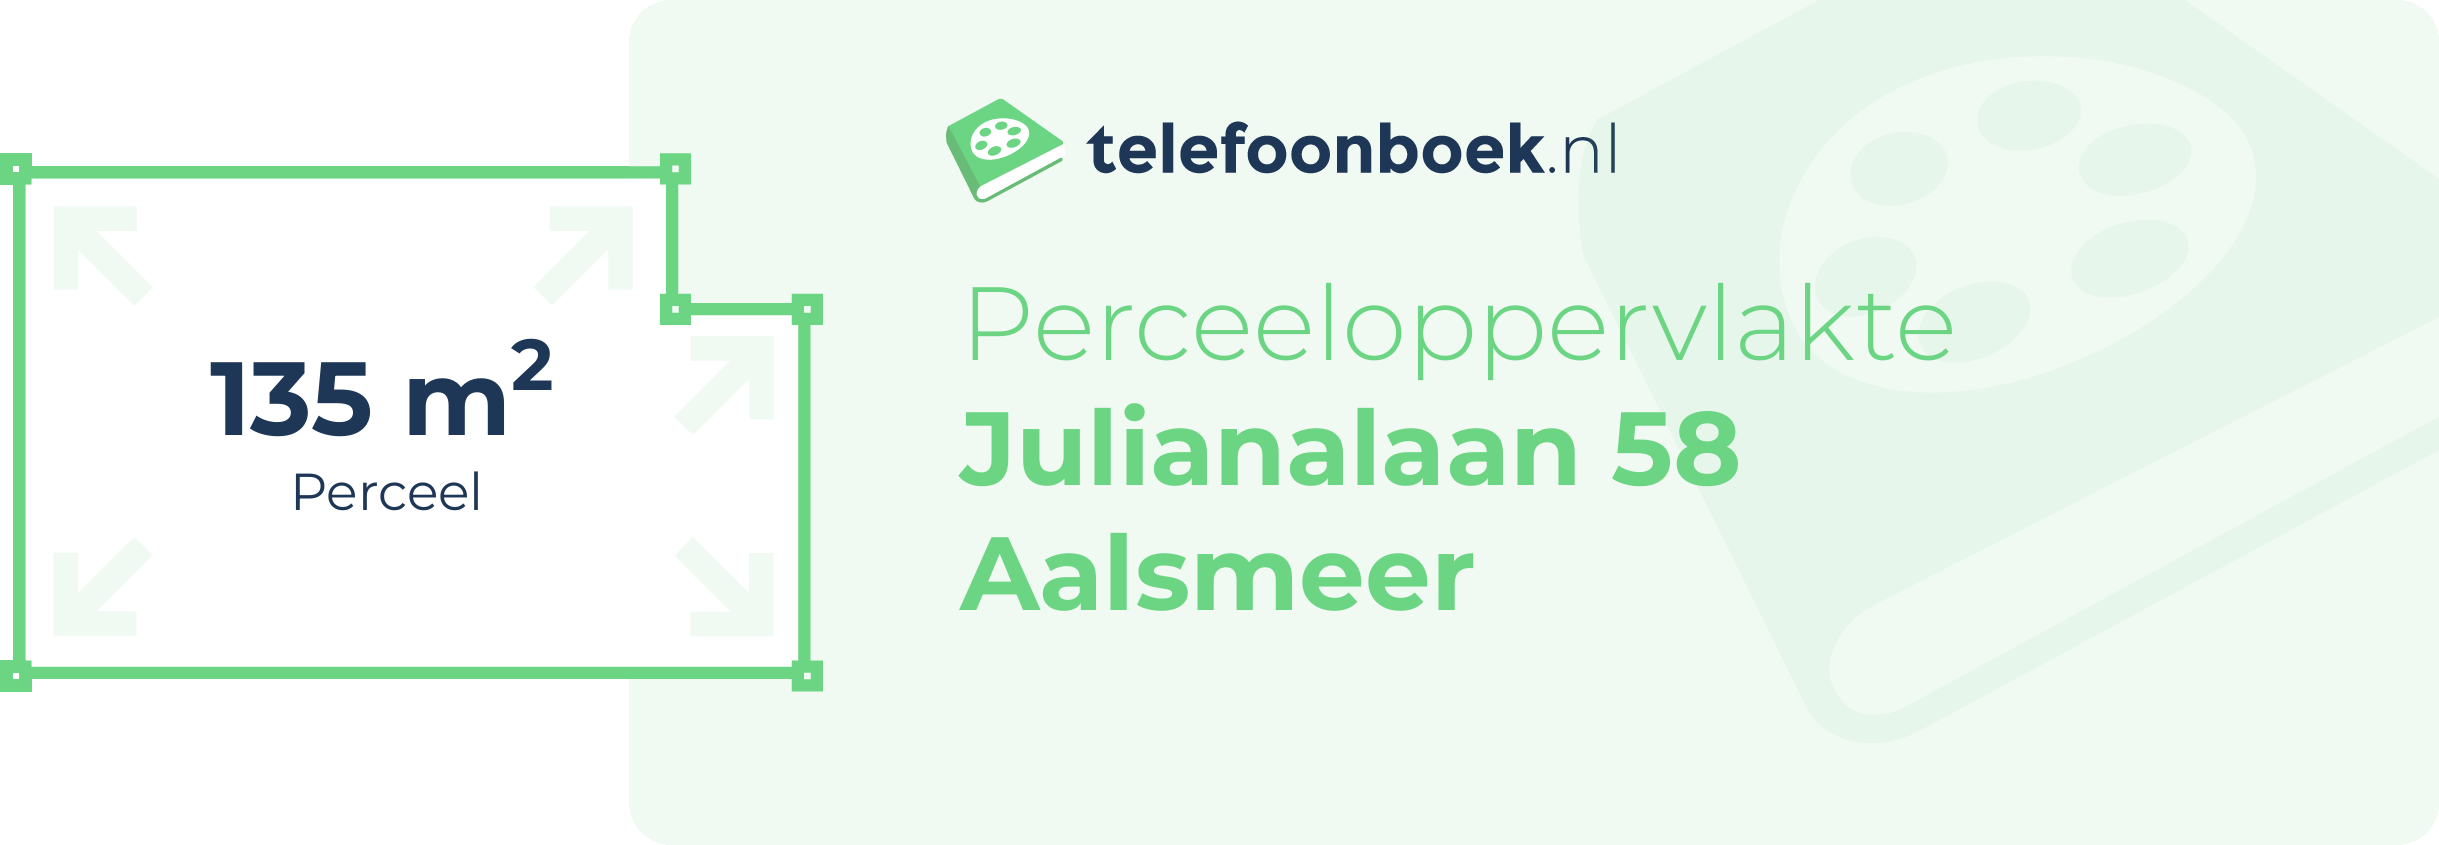 Perceeloppervlakte Julianalaan 58 Aalsmeer